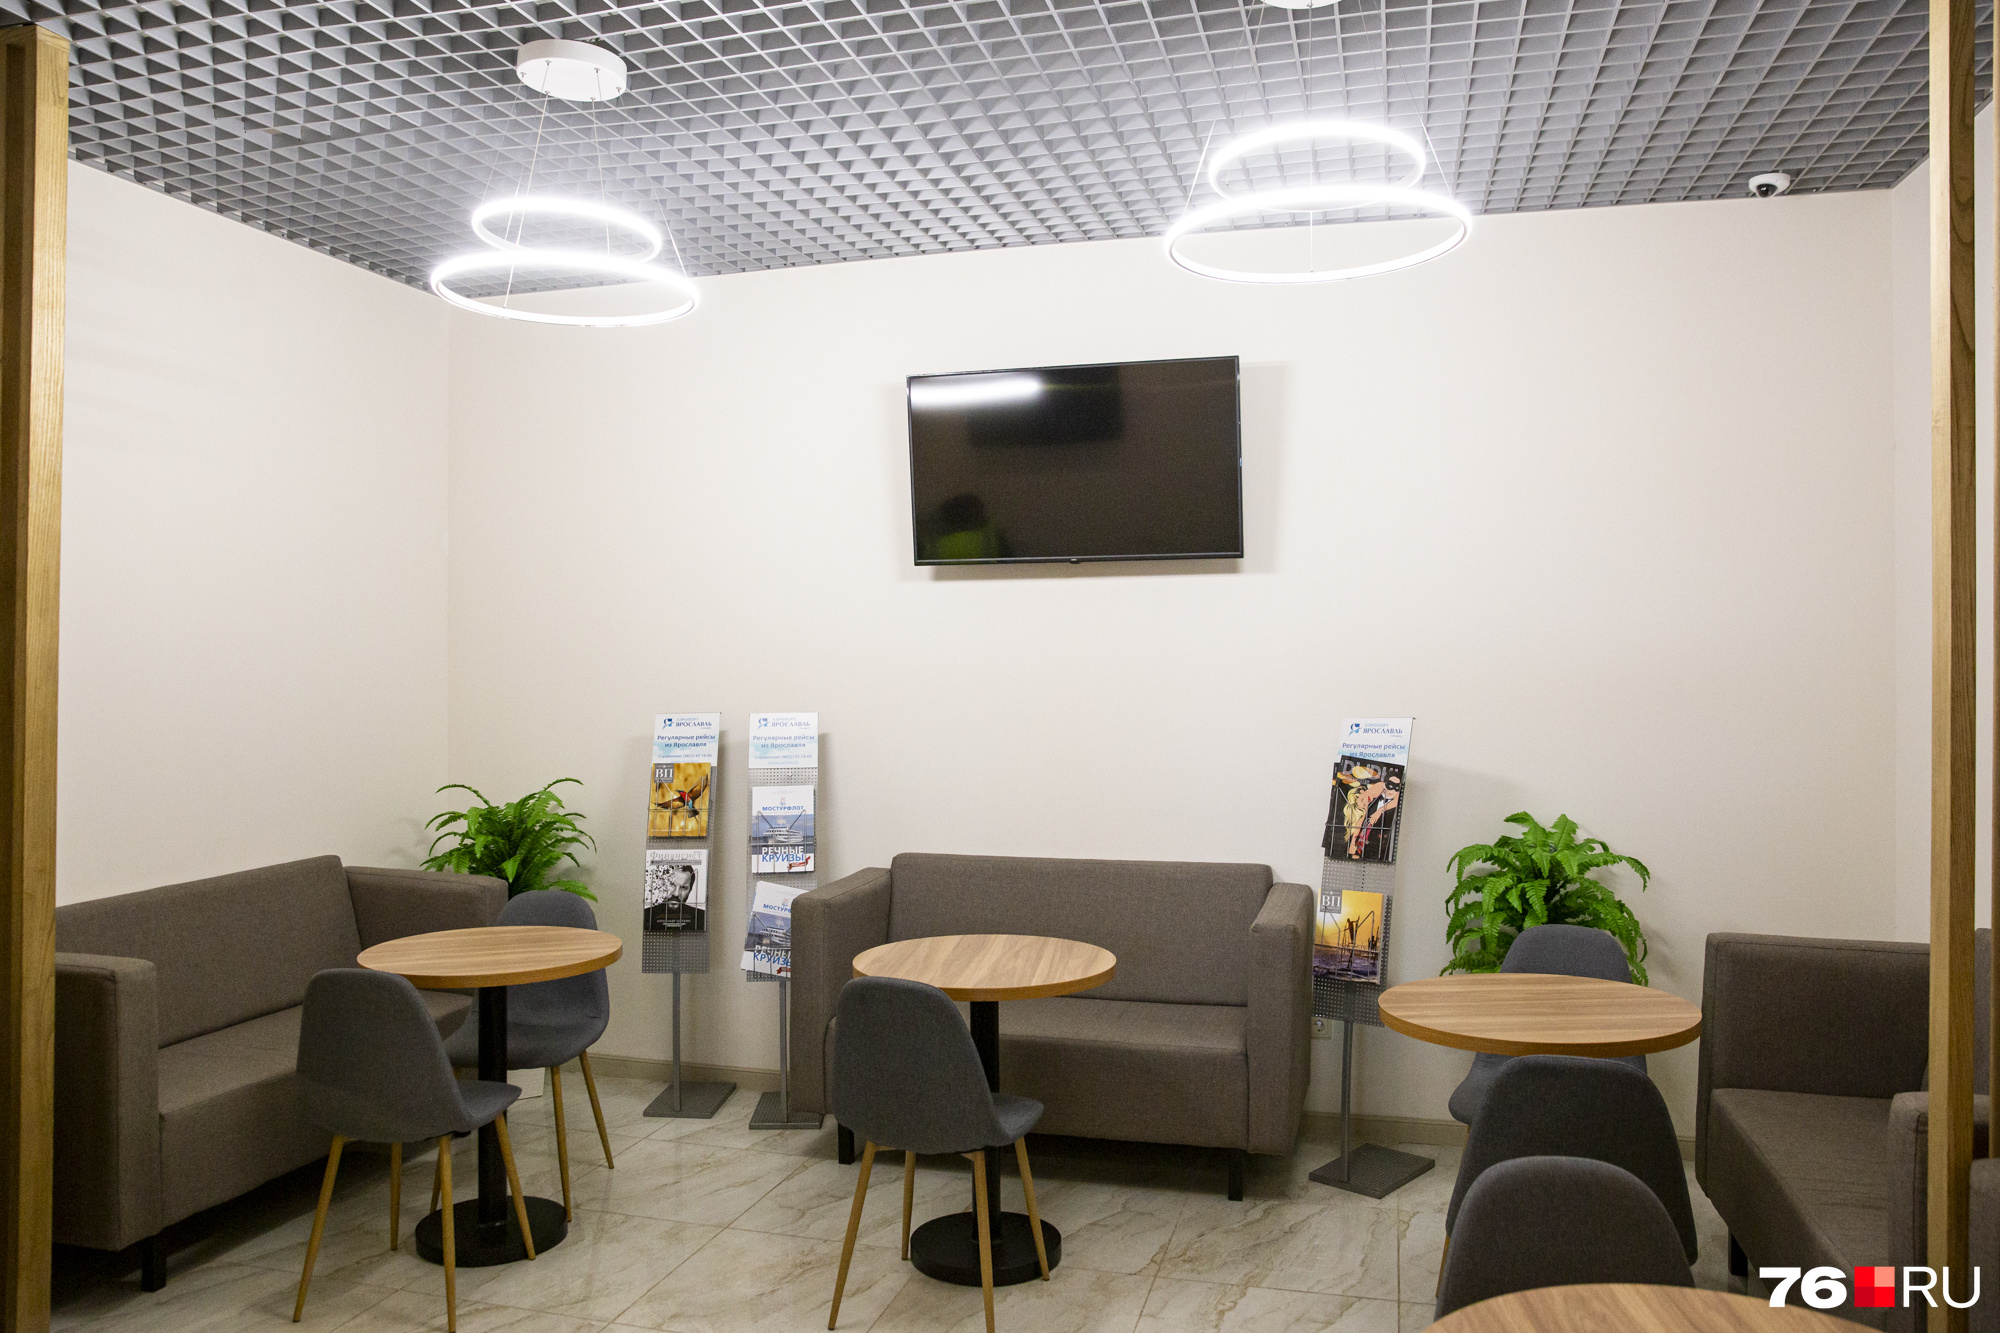 ВИП-зал в ярославском аэропорту